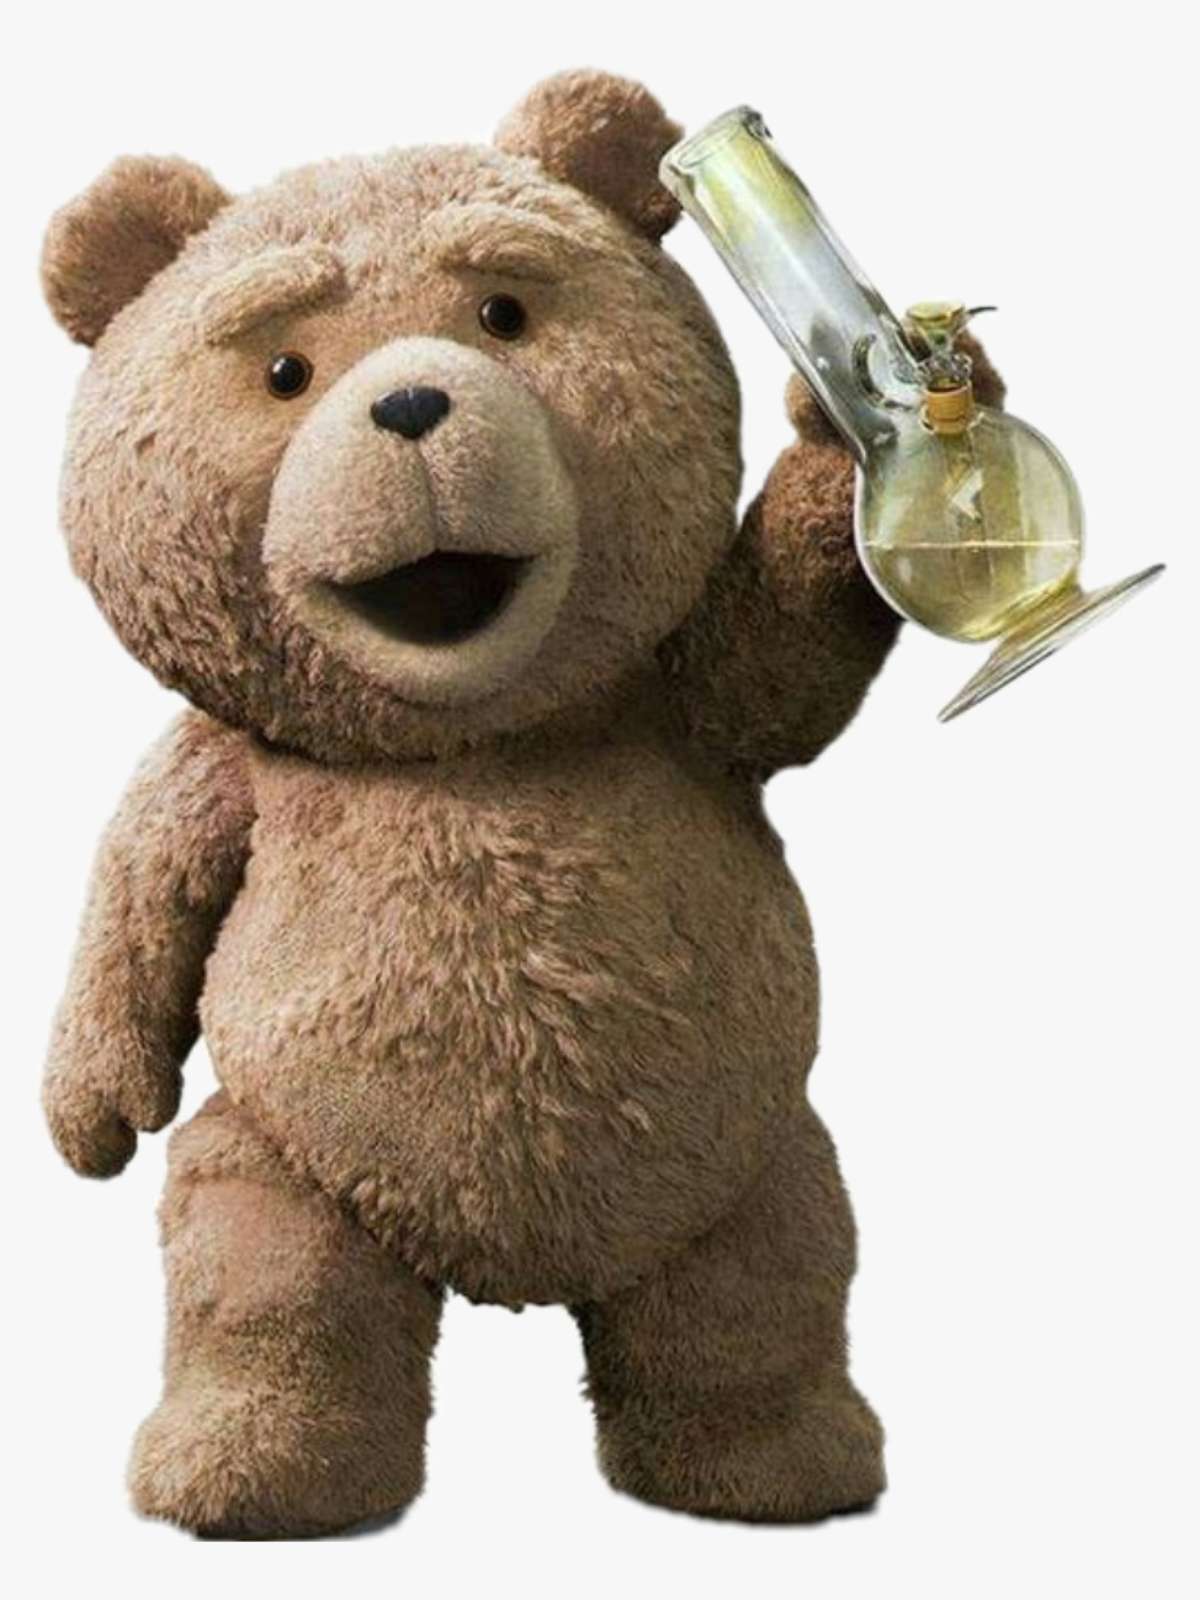 O filme do urso 2 é uma comédia sobre o urso.